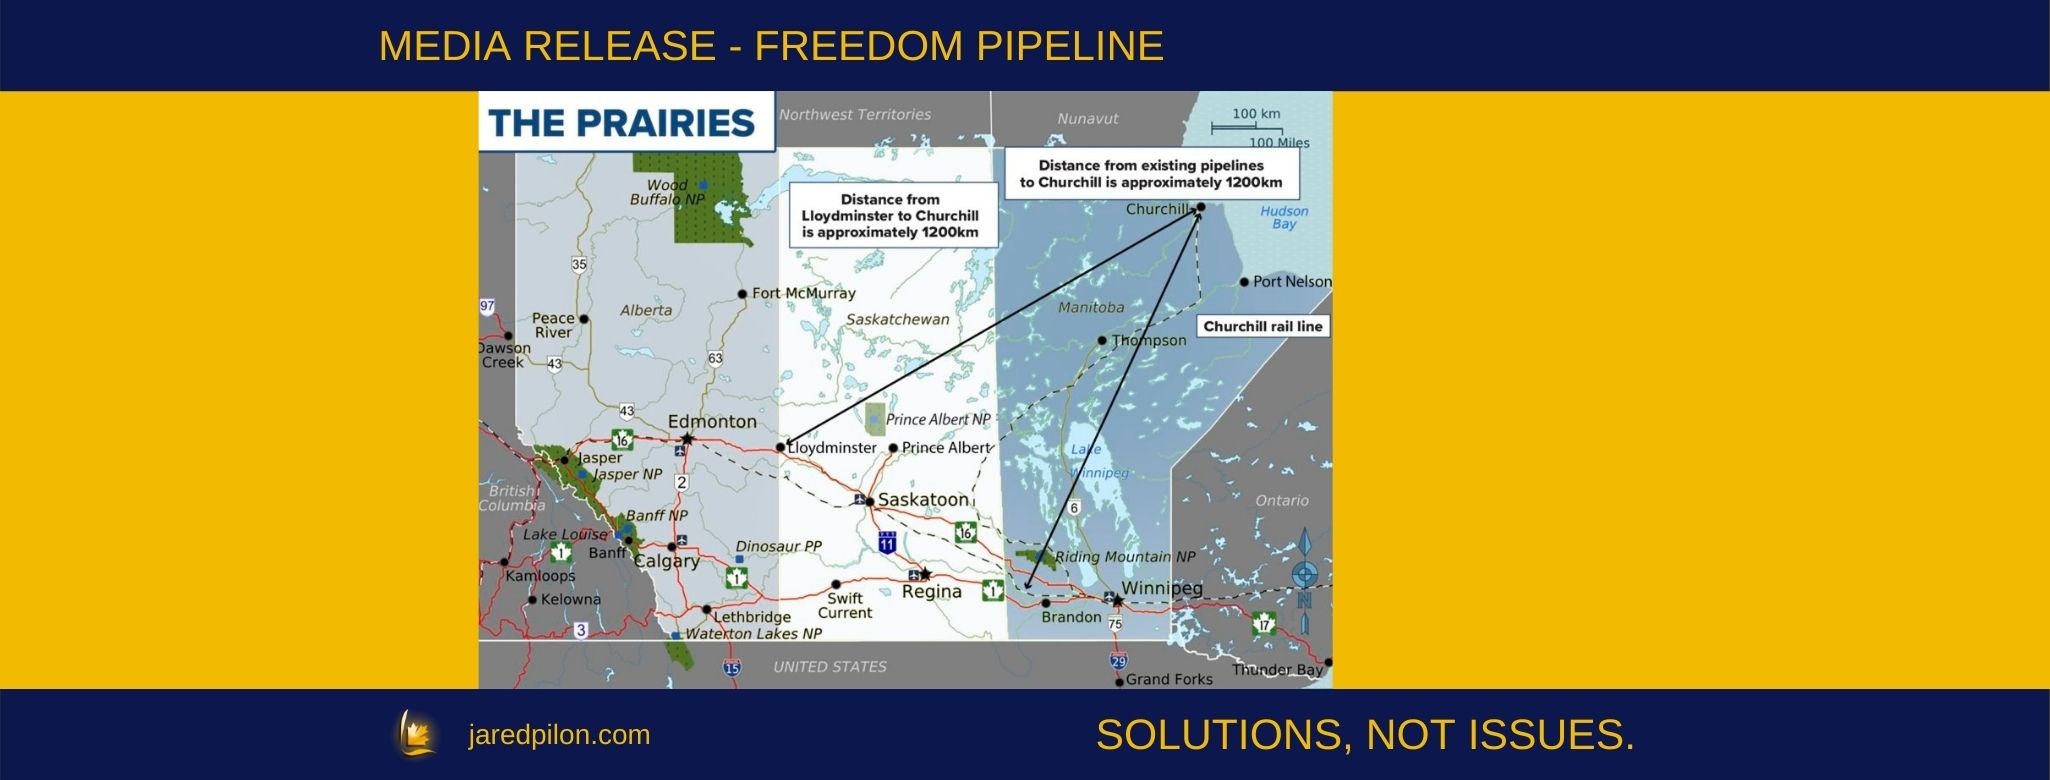 Freedom Pipeline